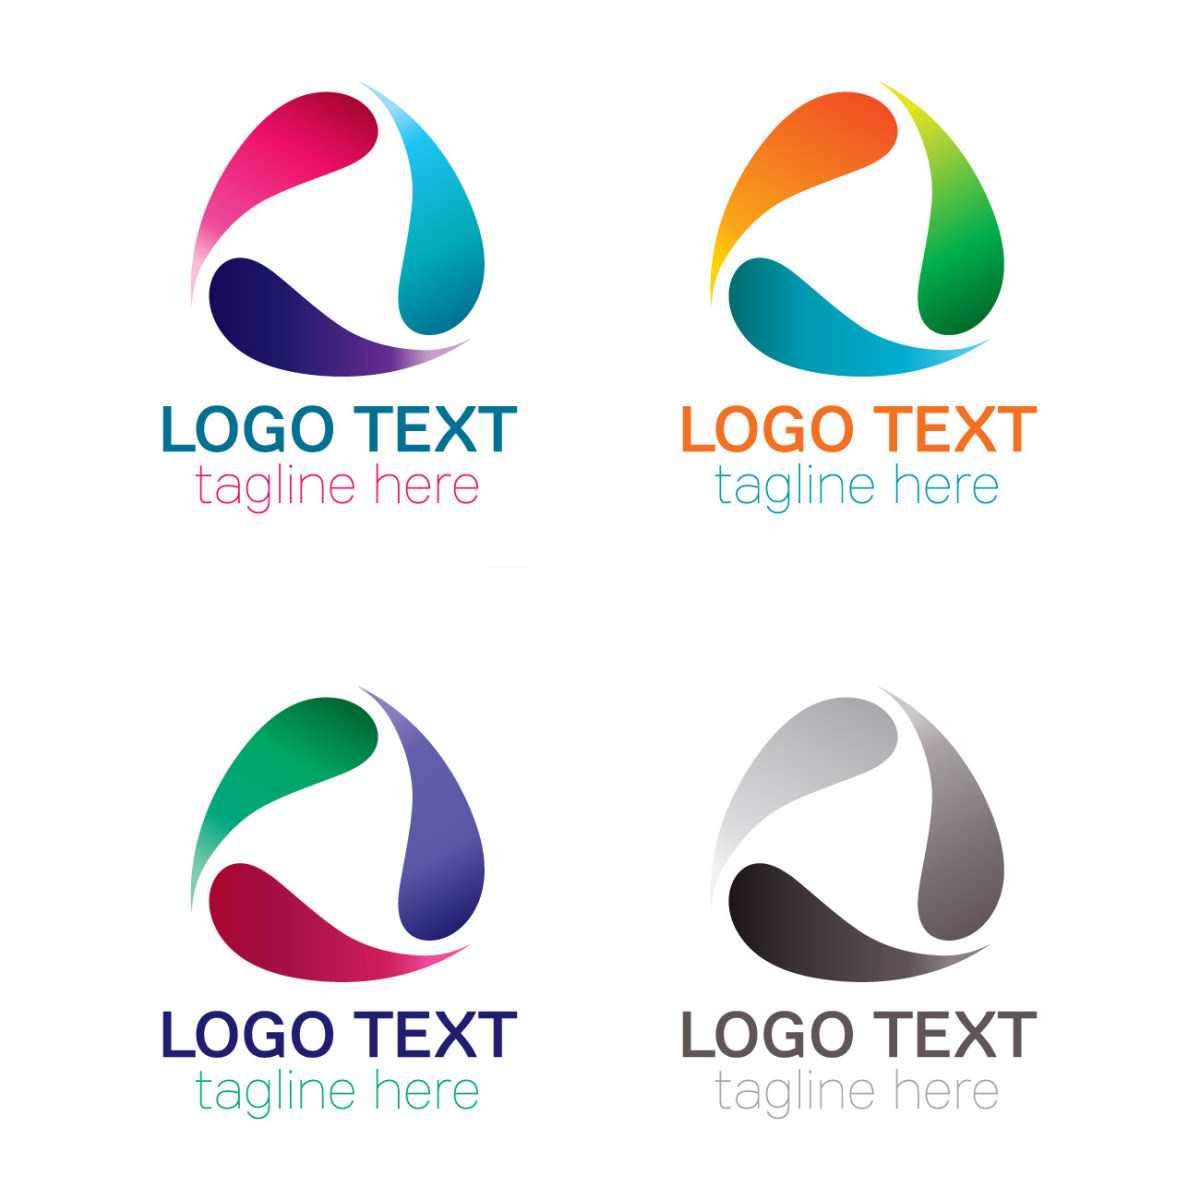 不同颜色抽象logo设计